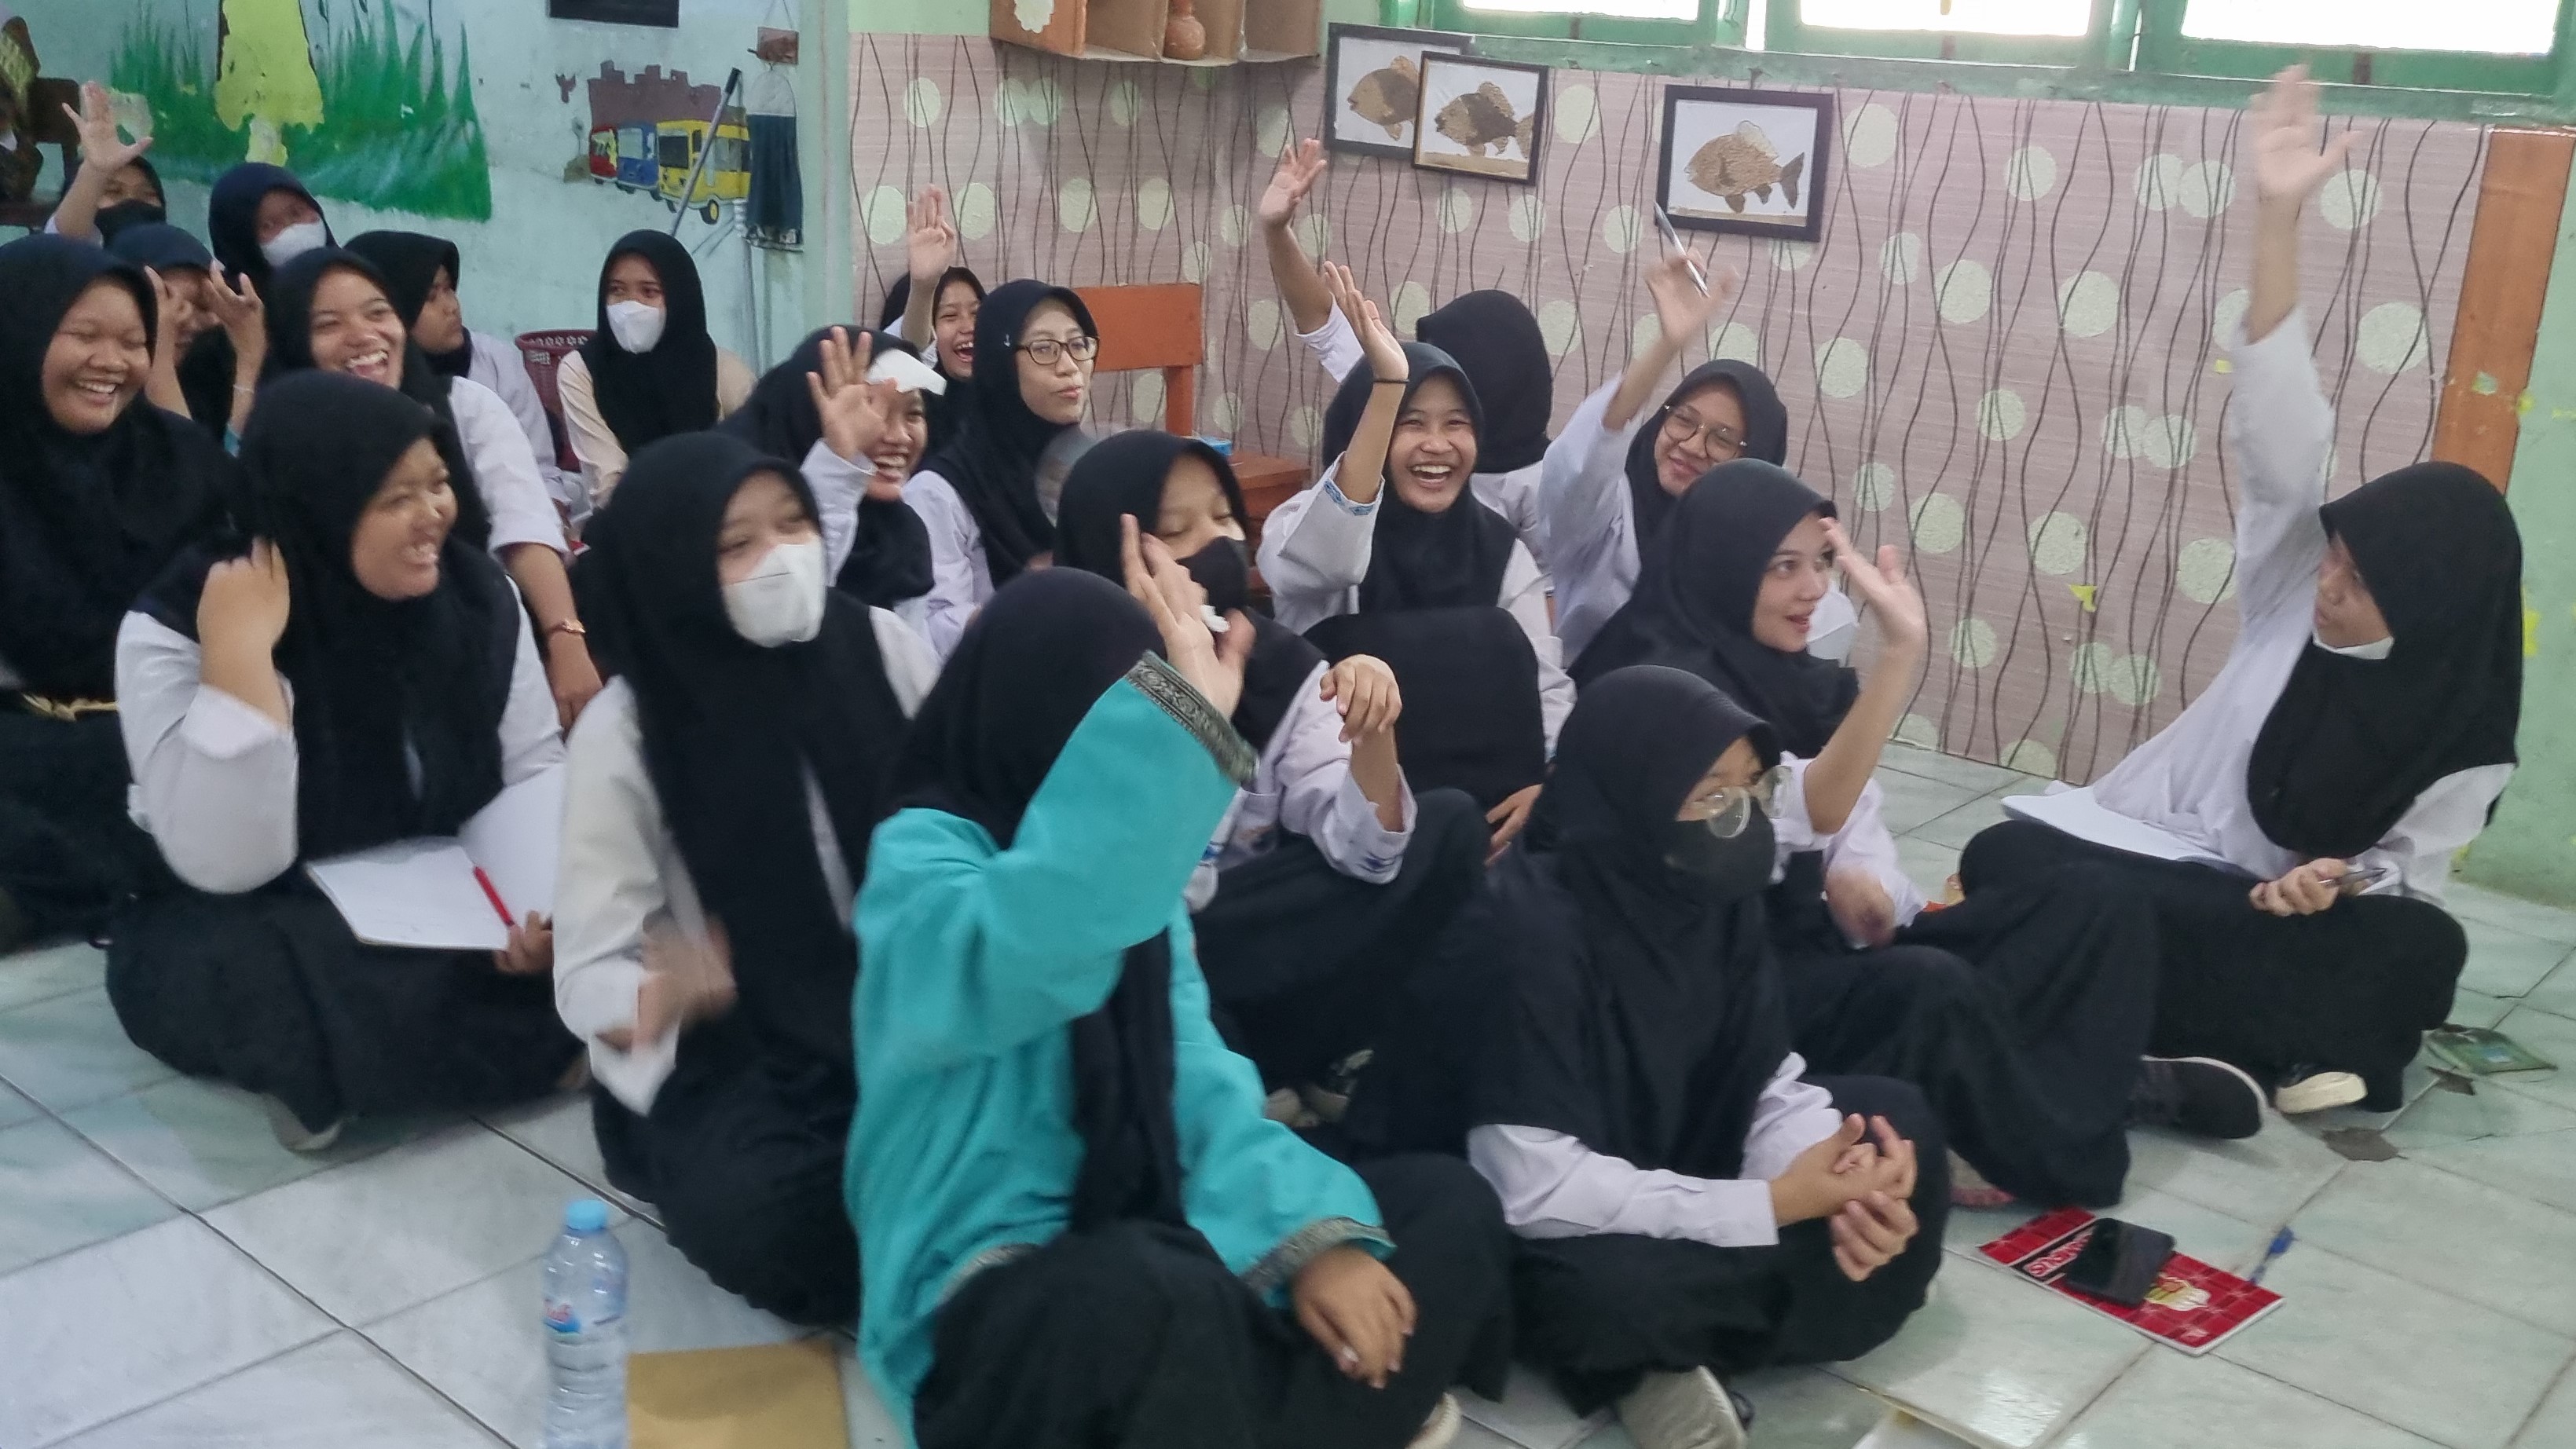 Partisipasi para siswi SMA Muhammadiyah 24 dalam kegiatan workshop. Sumber gambar: Dok. pribadi.